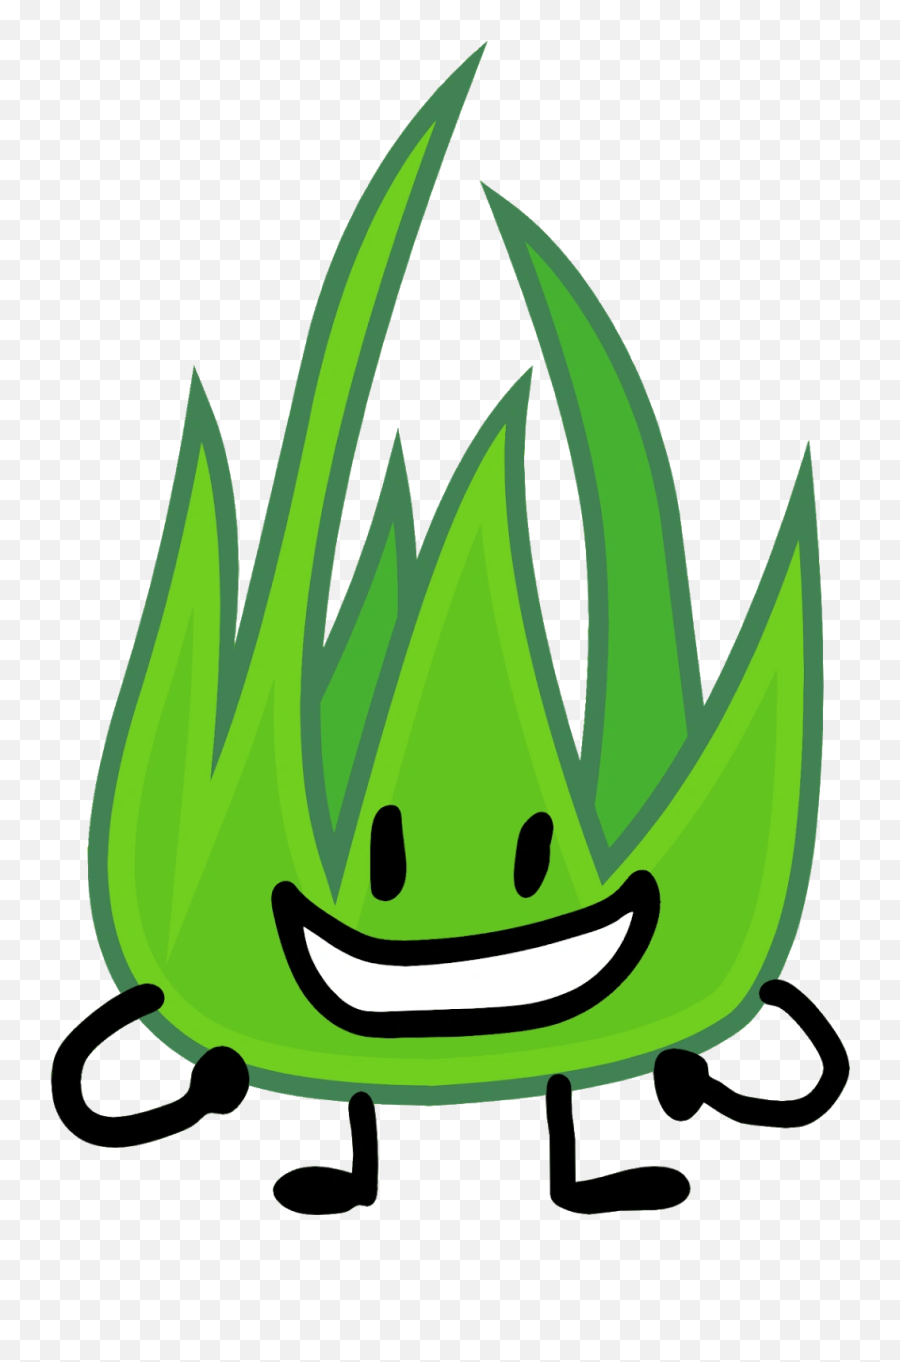 Battle For Dream Island Wiki - Bfb Grassy Icon Emoji,Xxxtentacion Emoji